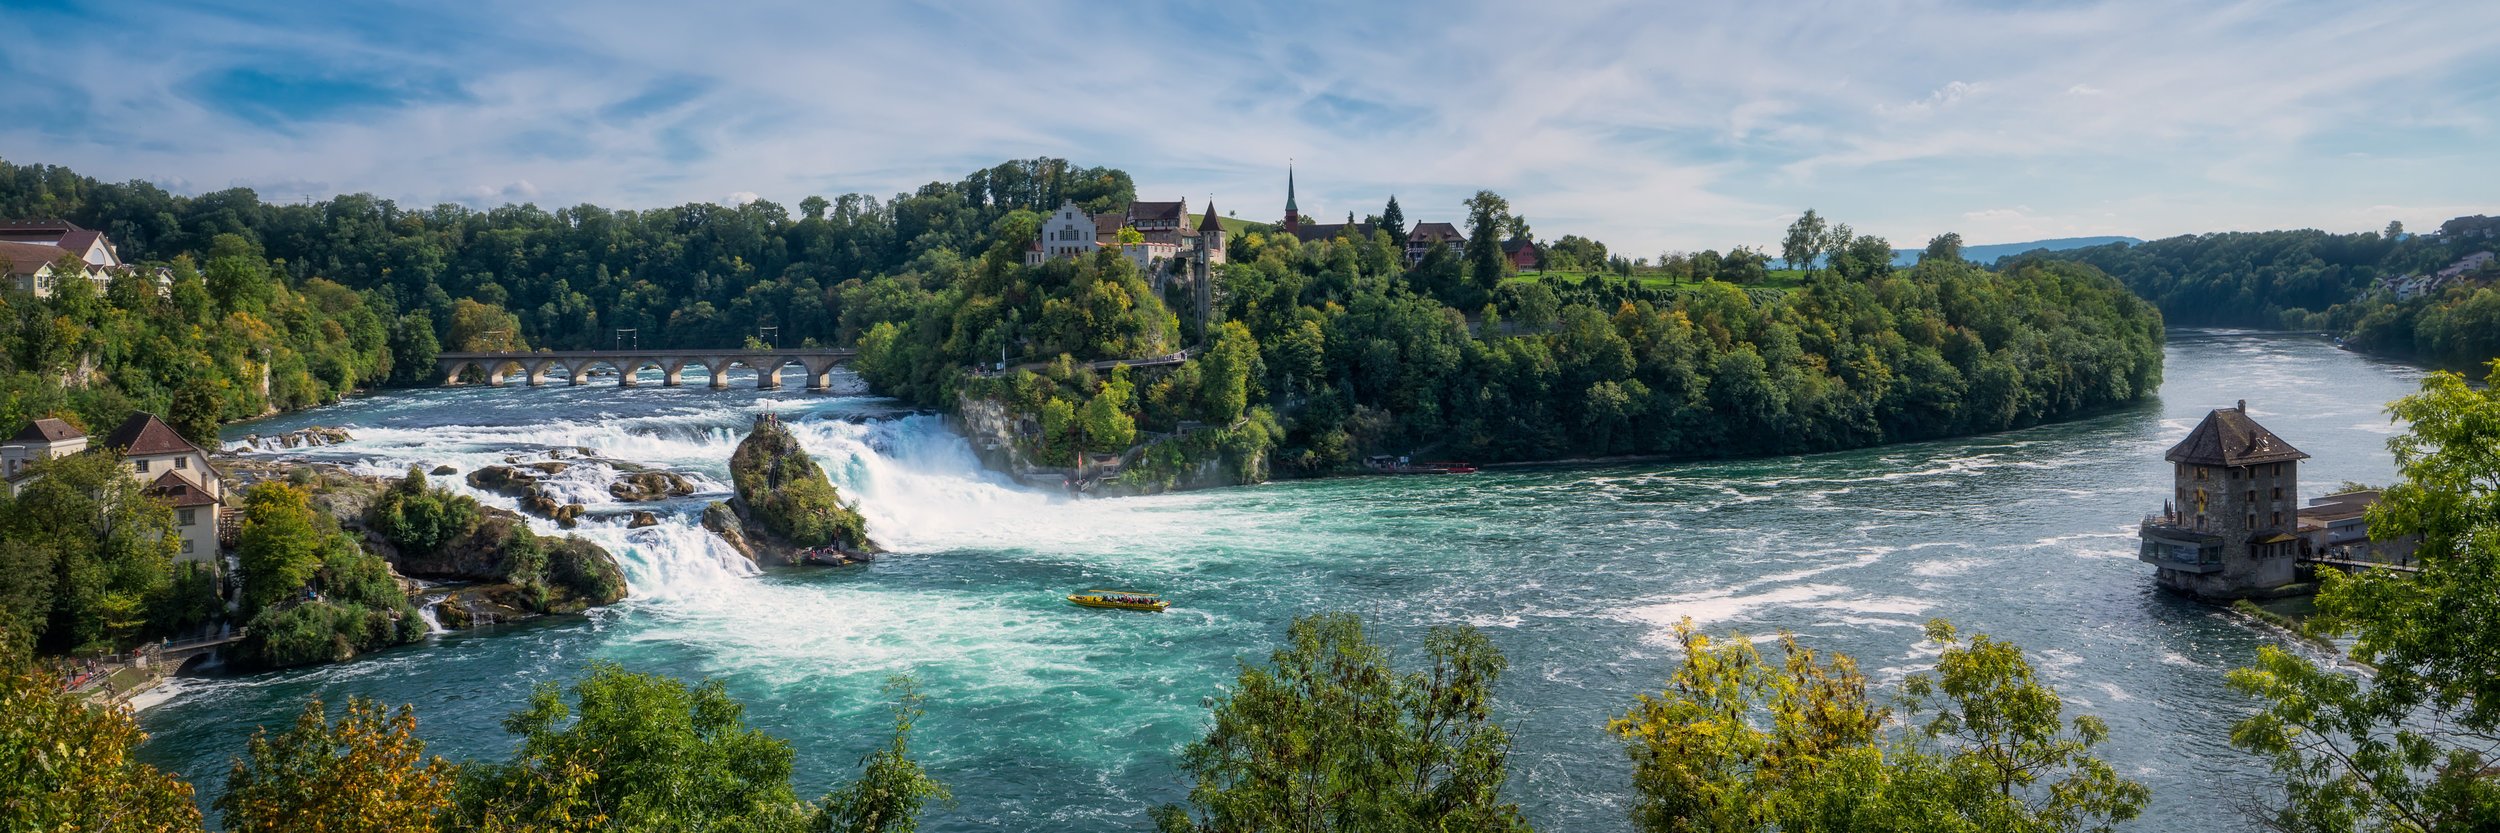 Швейцария Рейнский водопад Радуга